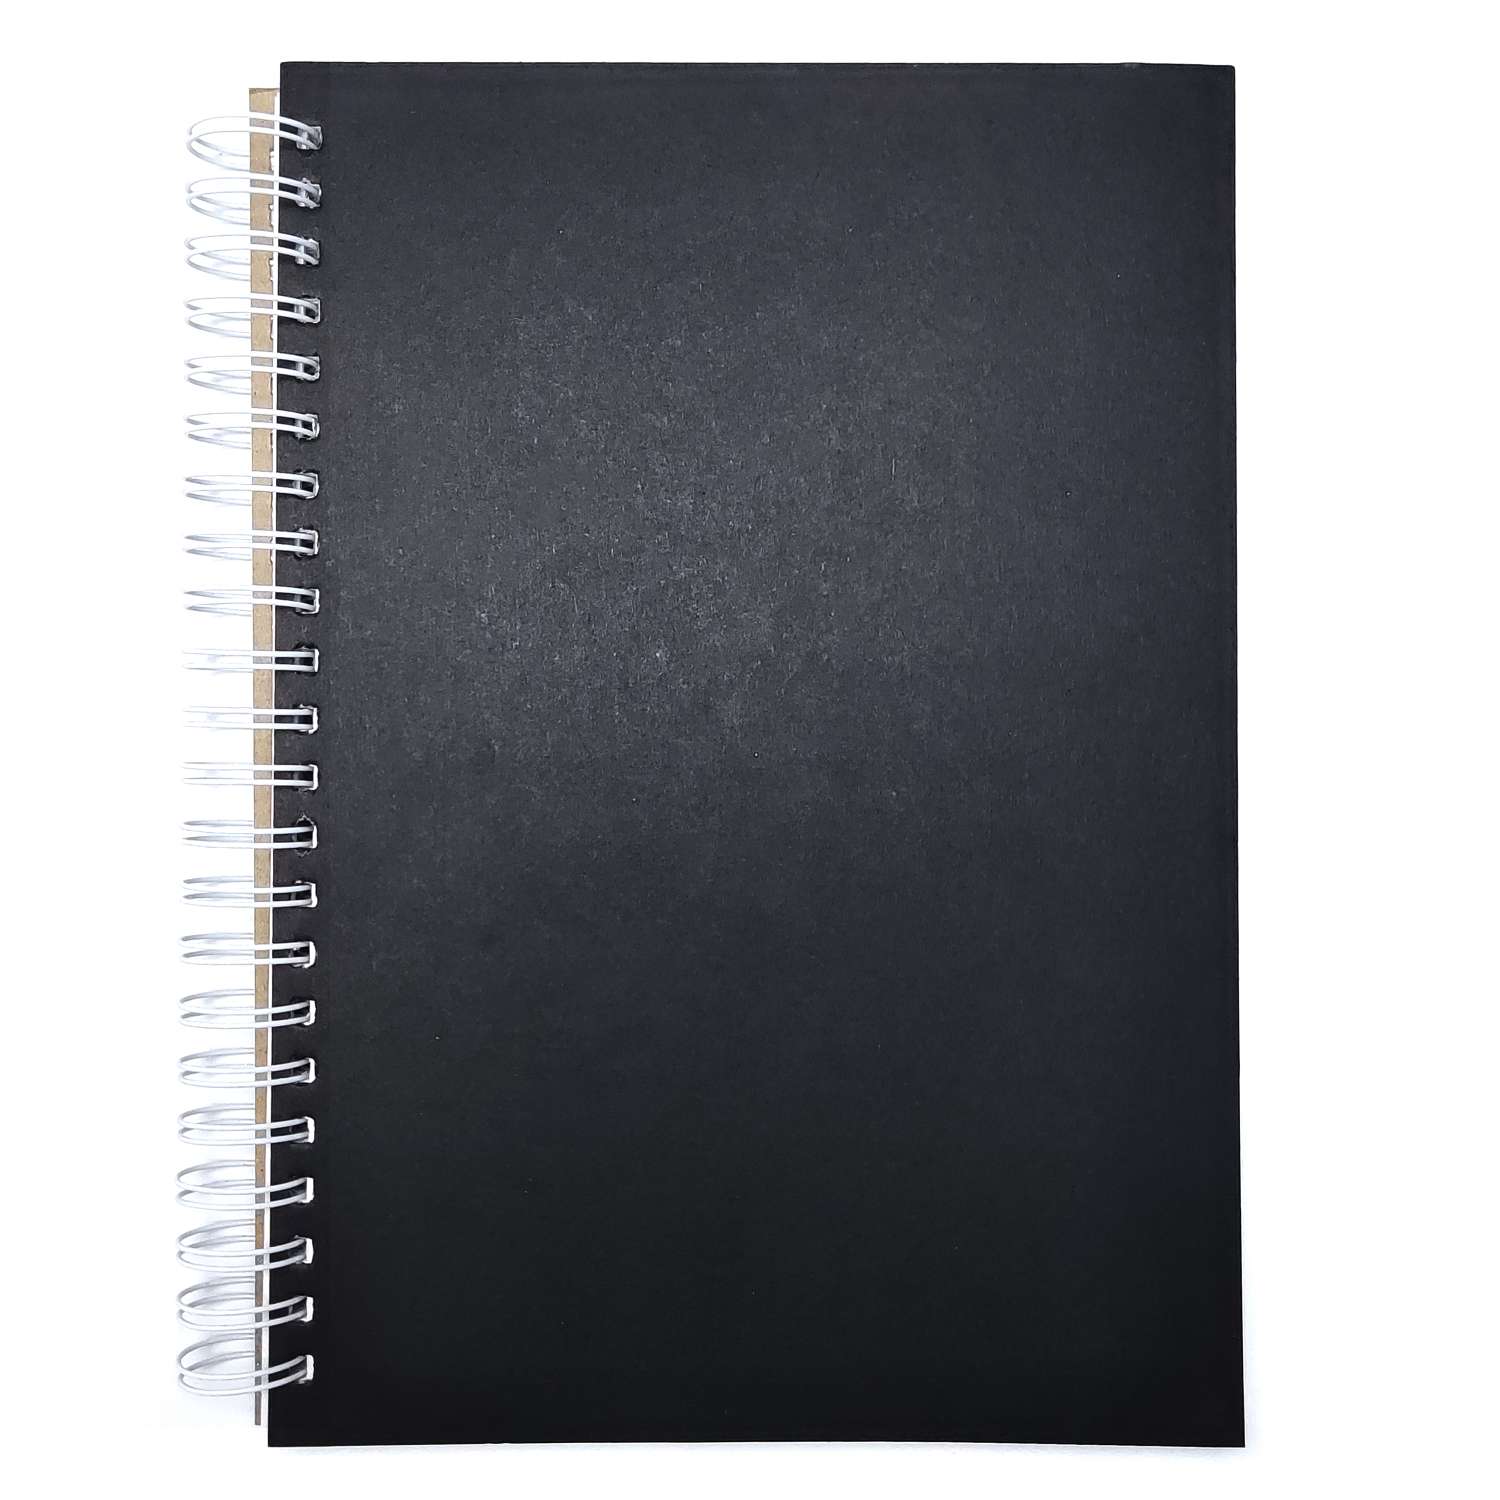 Скетчбук ПСВ А4 230грамм с черной обложкой горизонтальный 60 листов - фото 1